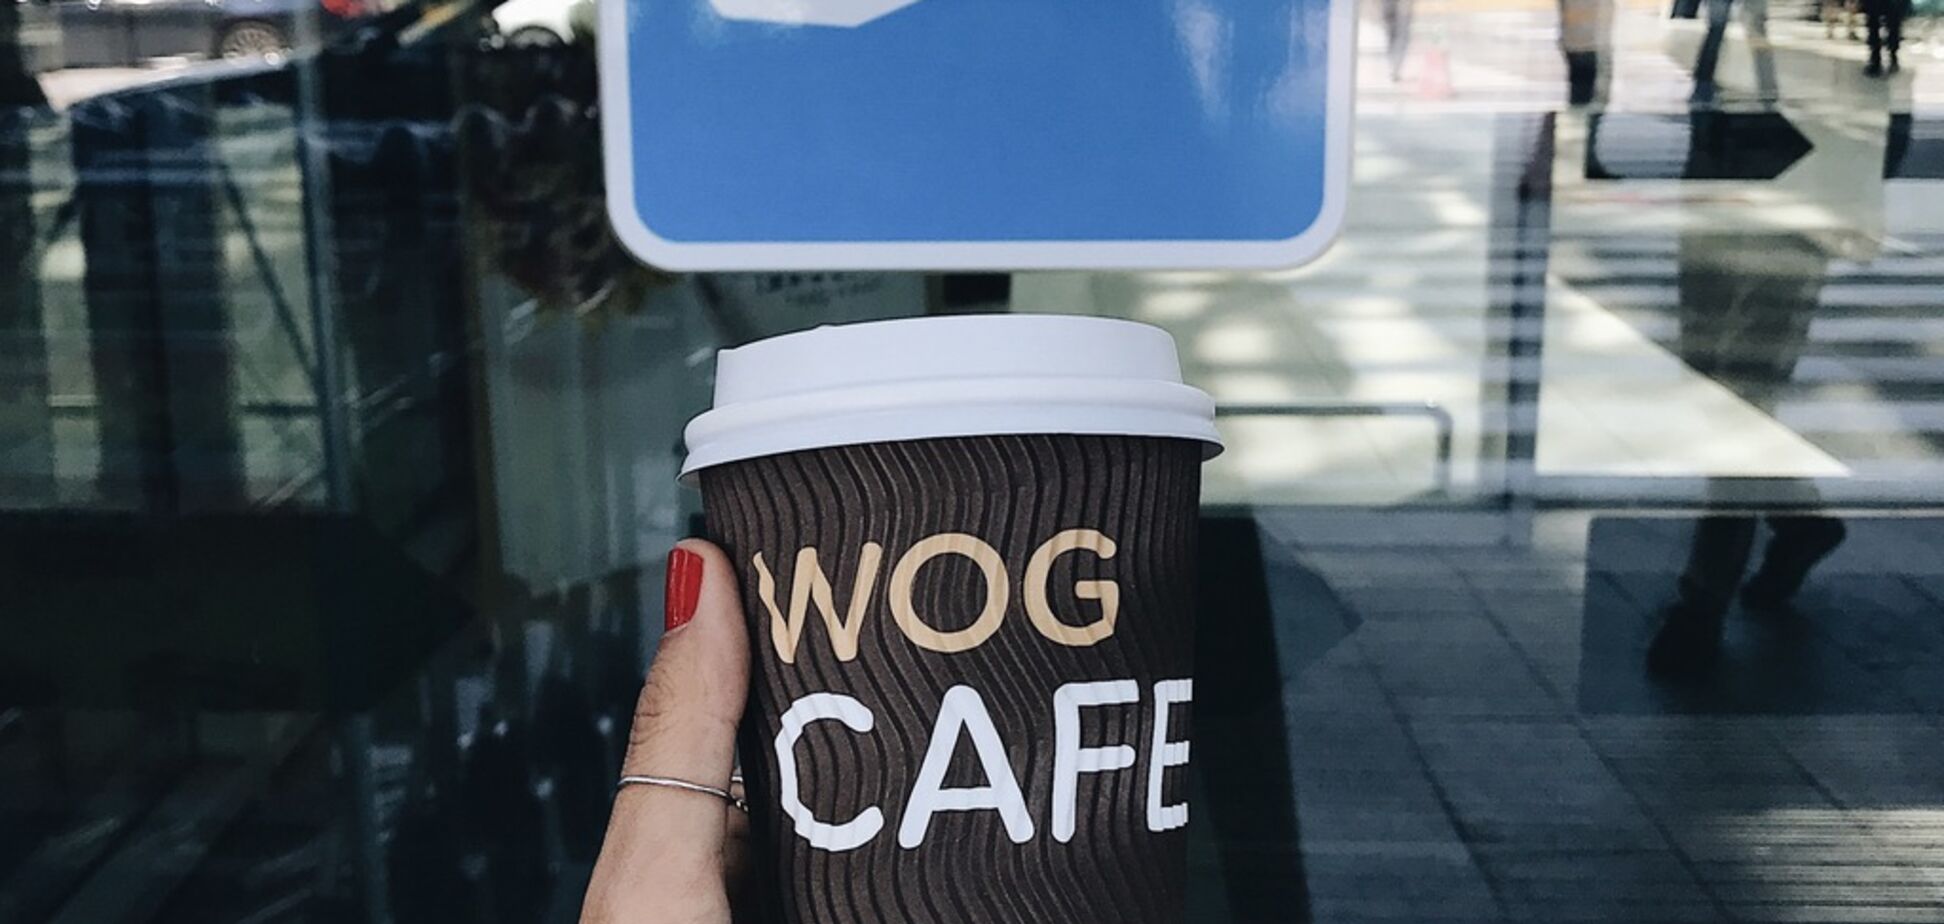 WOG CAFE вскоре откроется в аэропорту 'Борисполь'